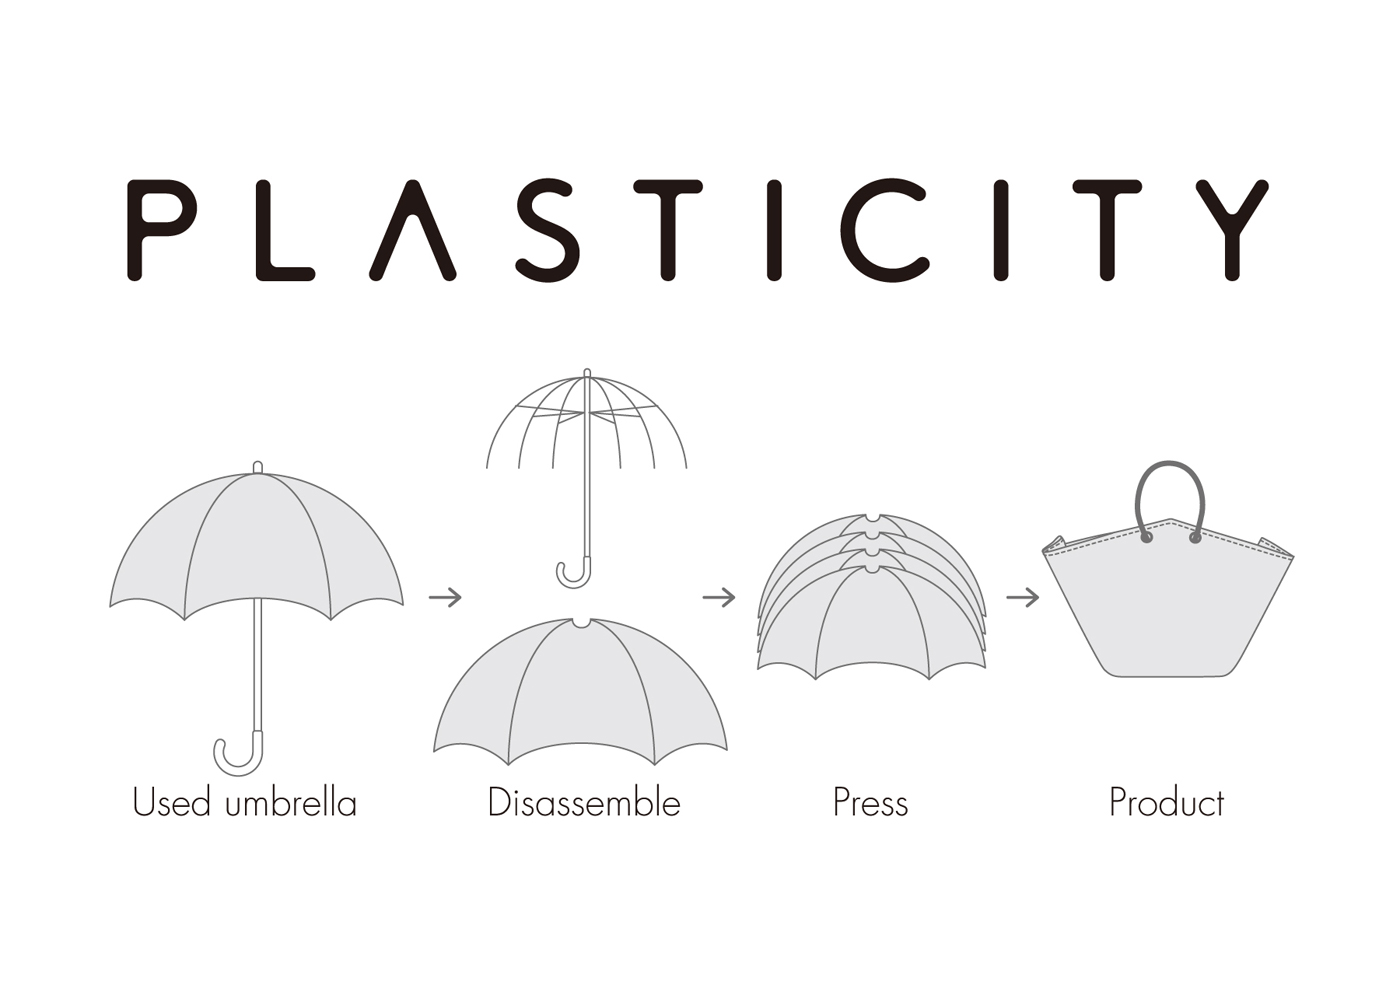 世界初 捨てられたビニール傘をリサイクルする Plasticity 6月18日より都内路面店での期間限定販売を開始 Newscast